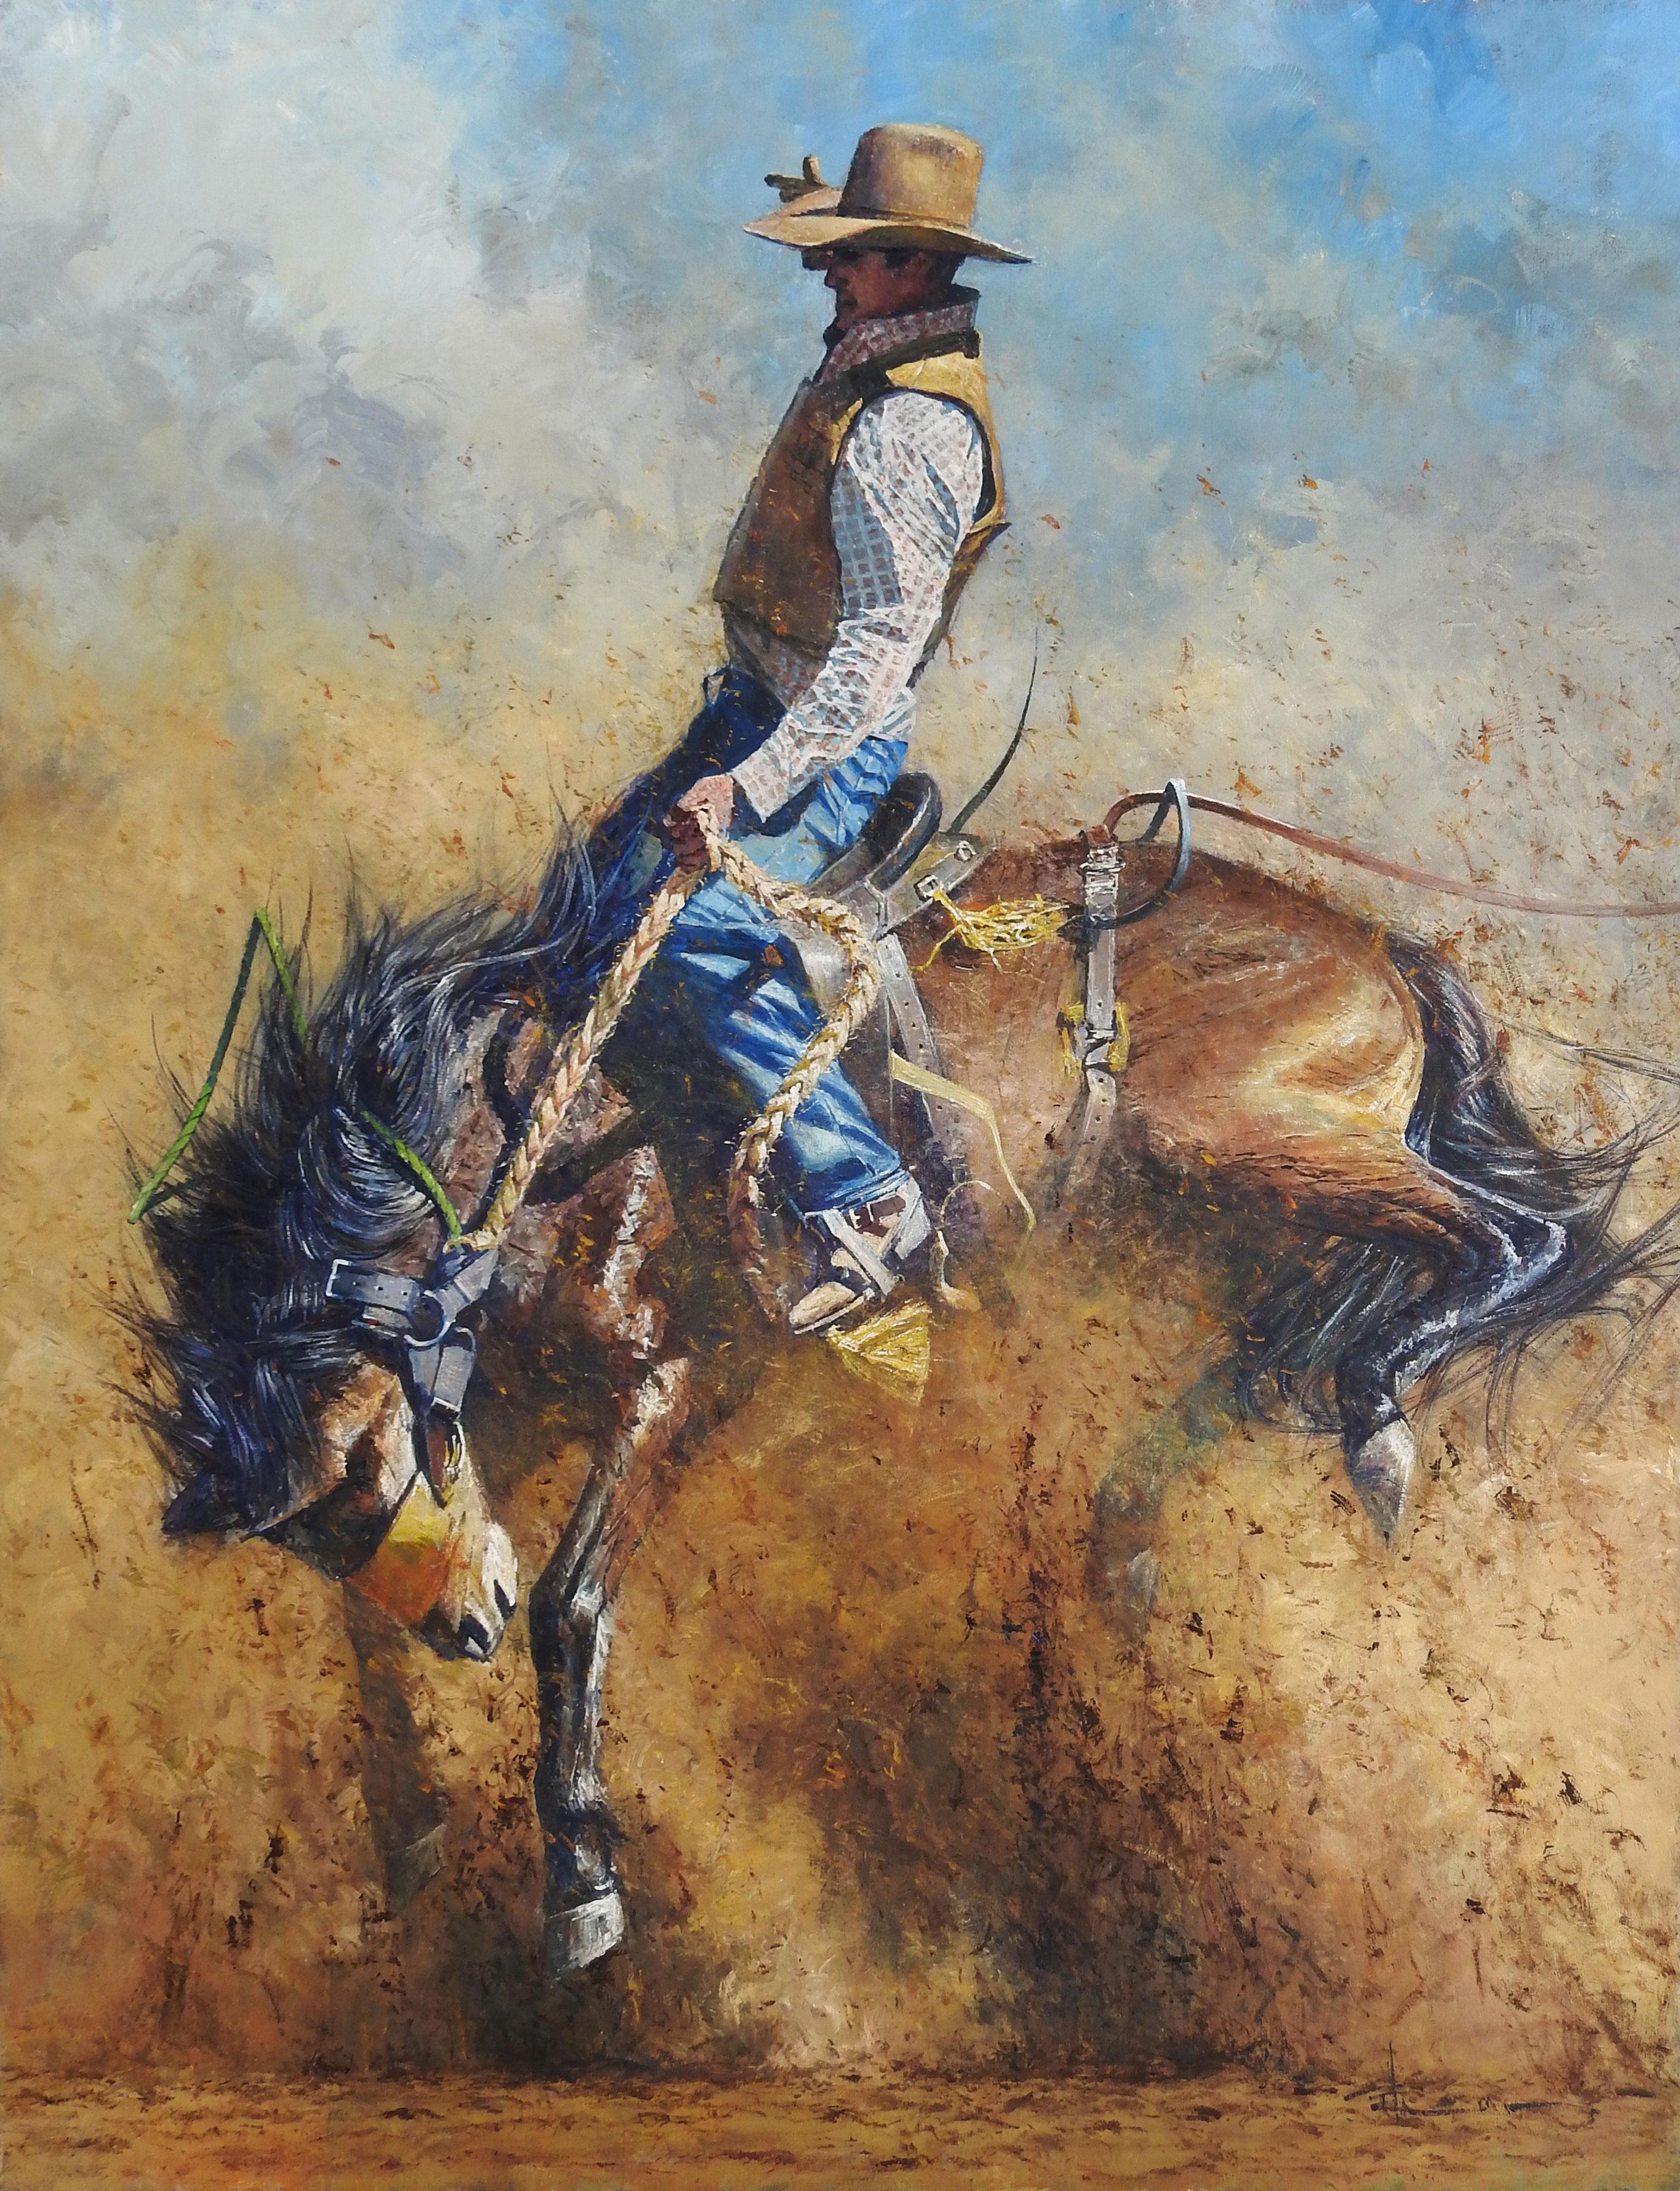 "Ain't My First Rodeo" von Robert Hagan ist ein Original Öl auf Leinwand und misst 80x60 in.  Dieses große westliche Originalgemälde des australischen Künstlers Robert Hagan,  zeigt einen Cowboy, der auf einem majestätischen braunen Pferd mit